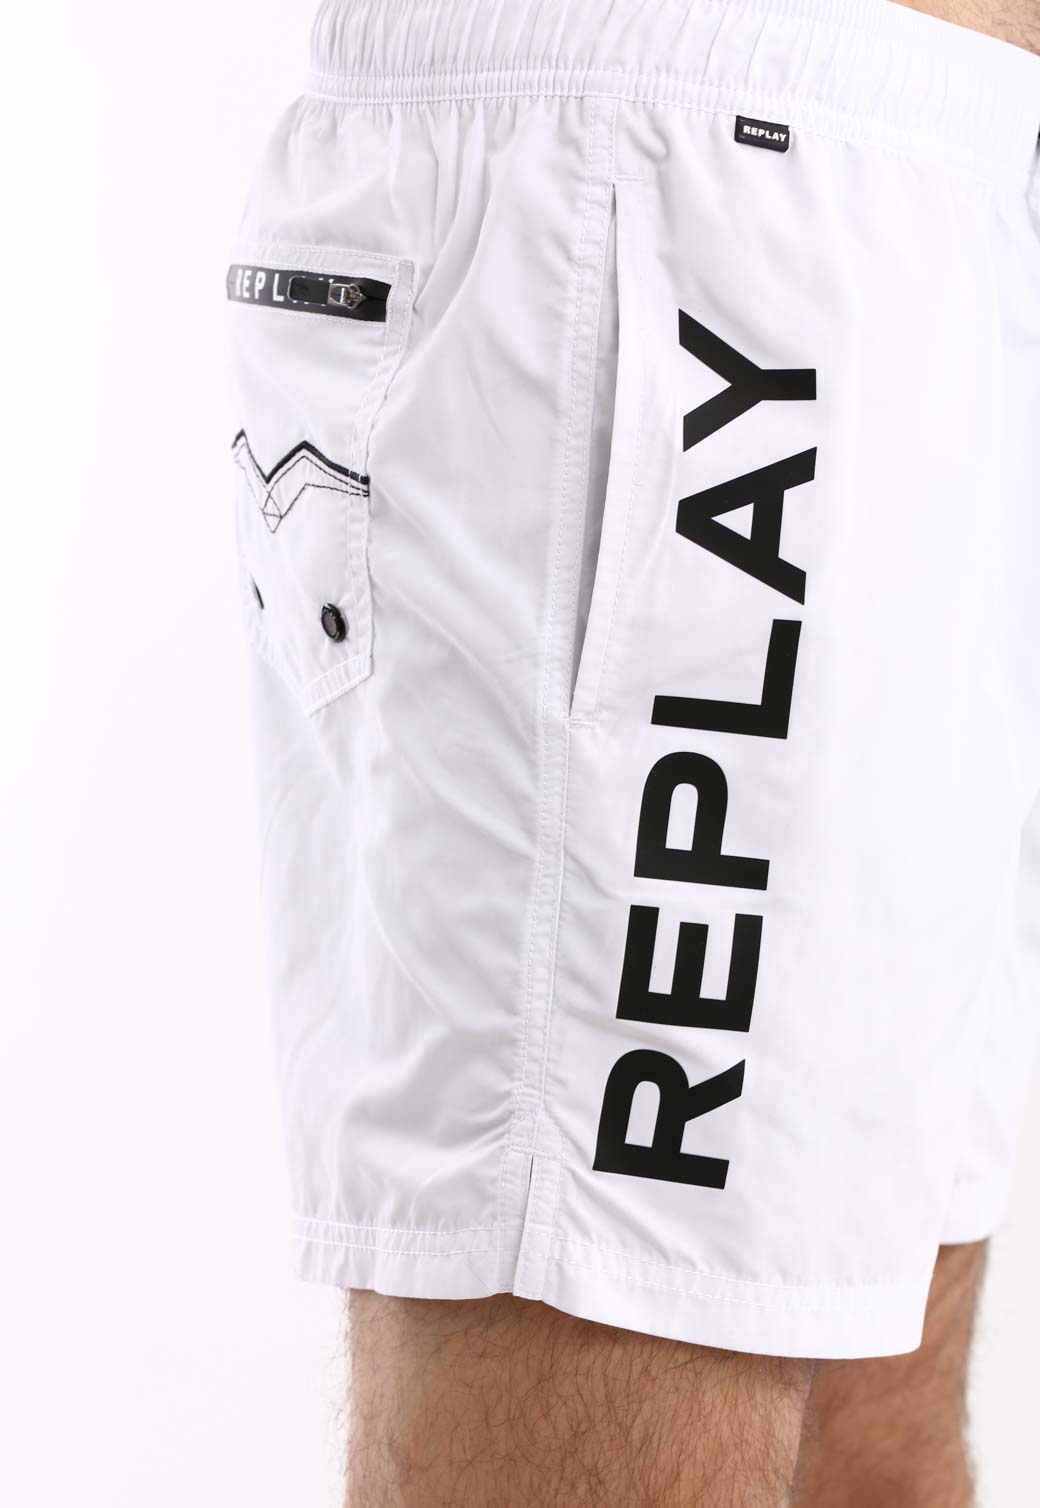 בגד ים לוגו גדול צד ימין לוגו מאחורה גברים - Replay